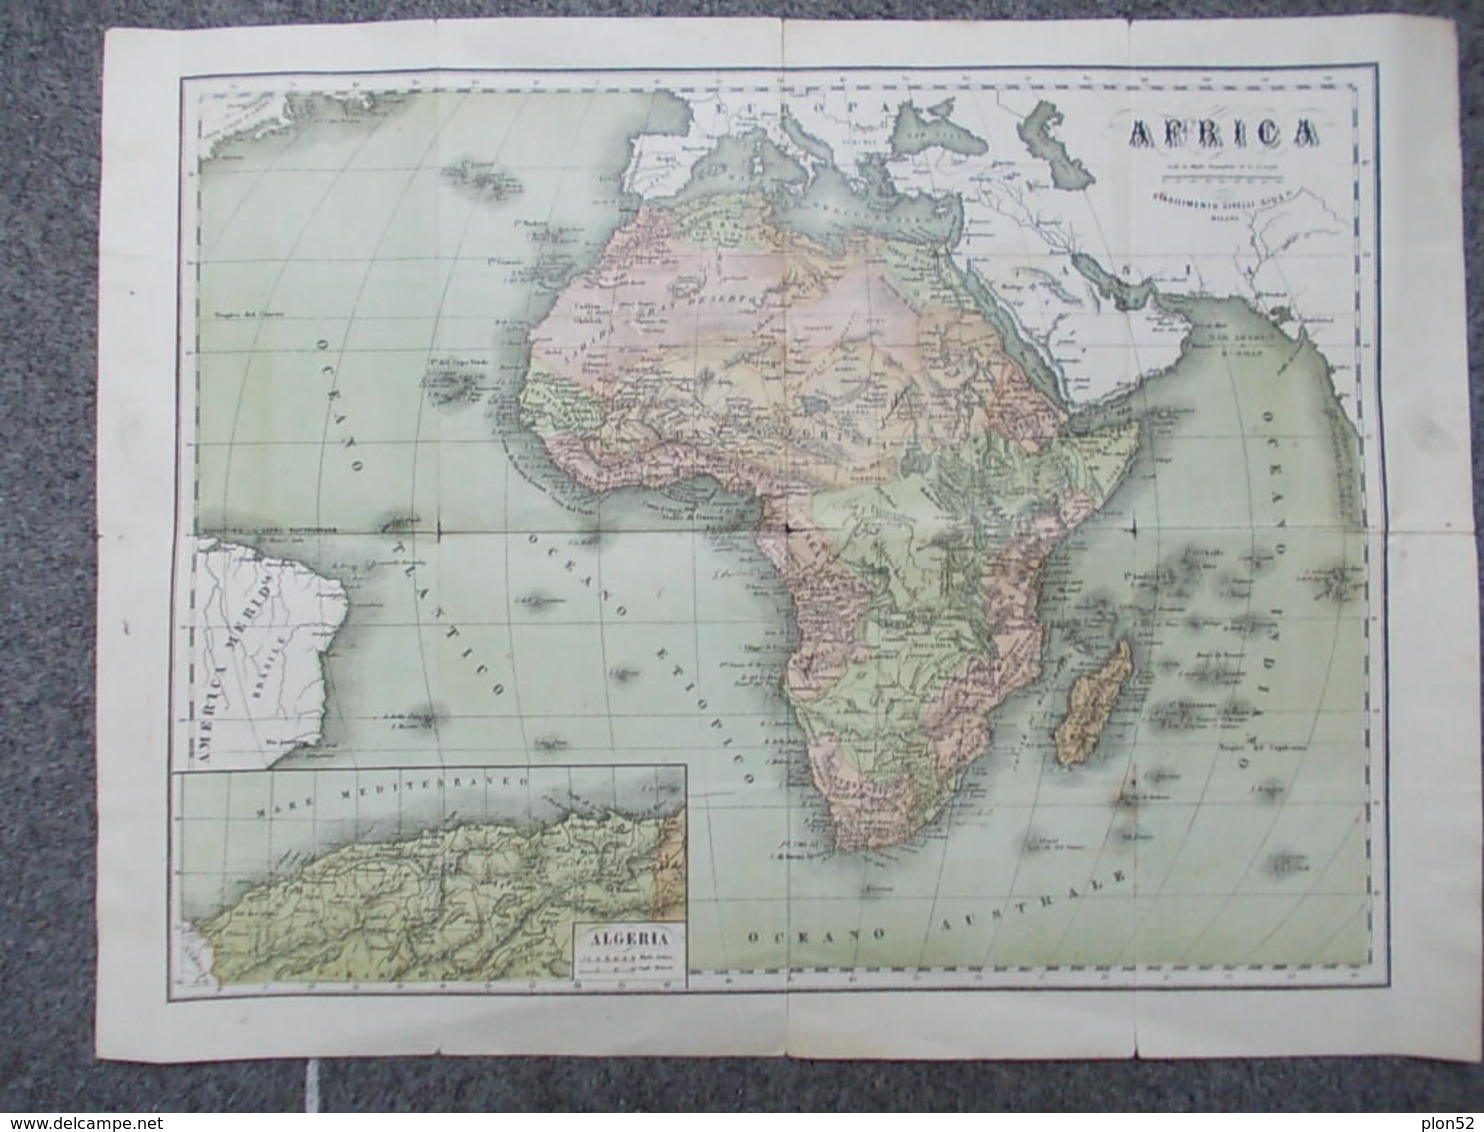 12661-CARTA GEOGRAFICA DELL'AFRICA - Landkarten